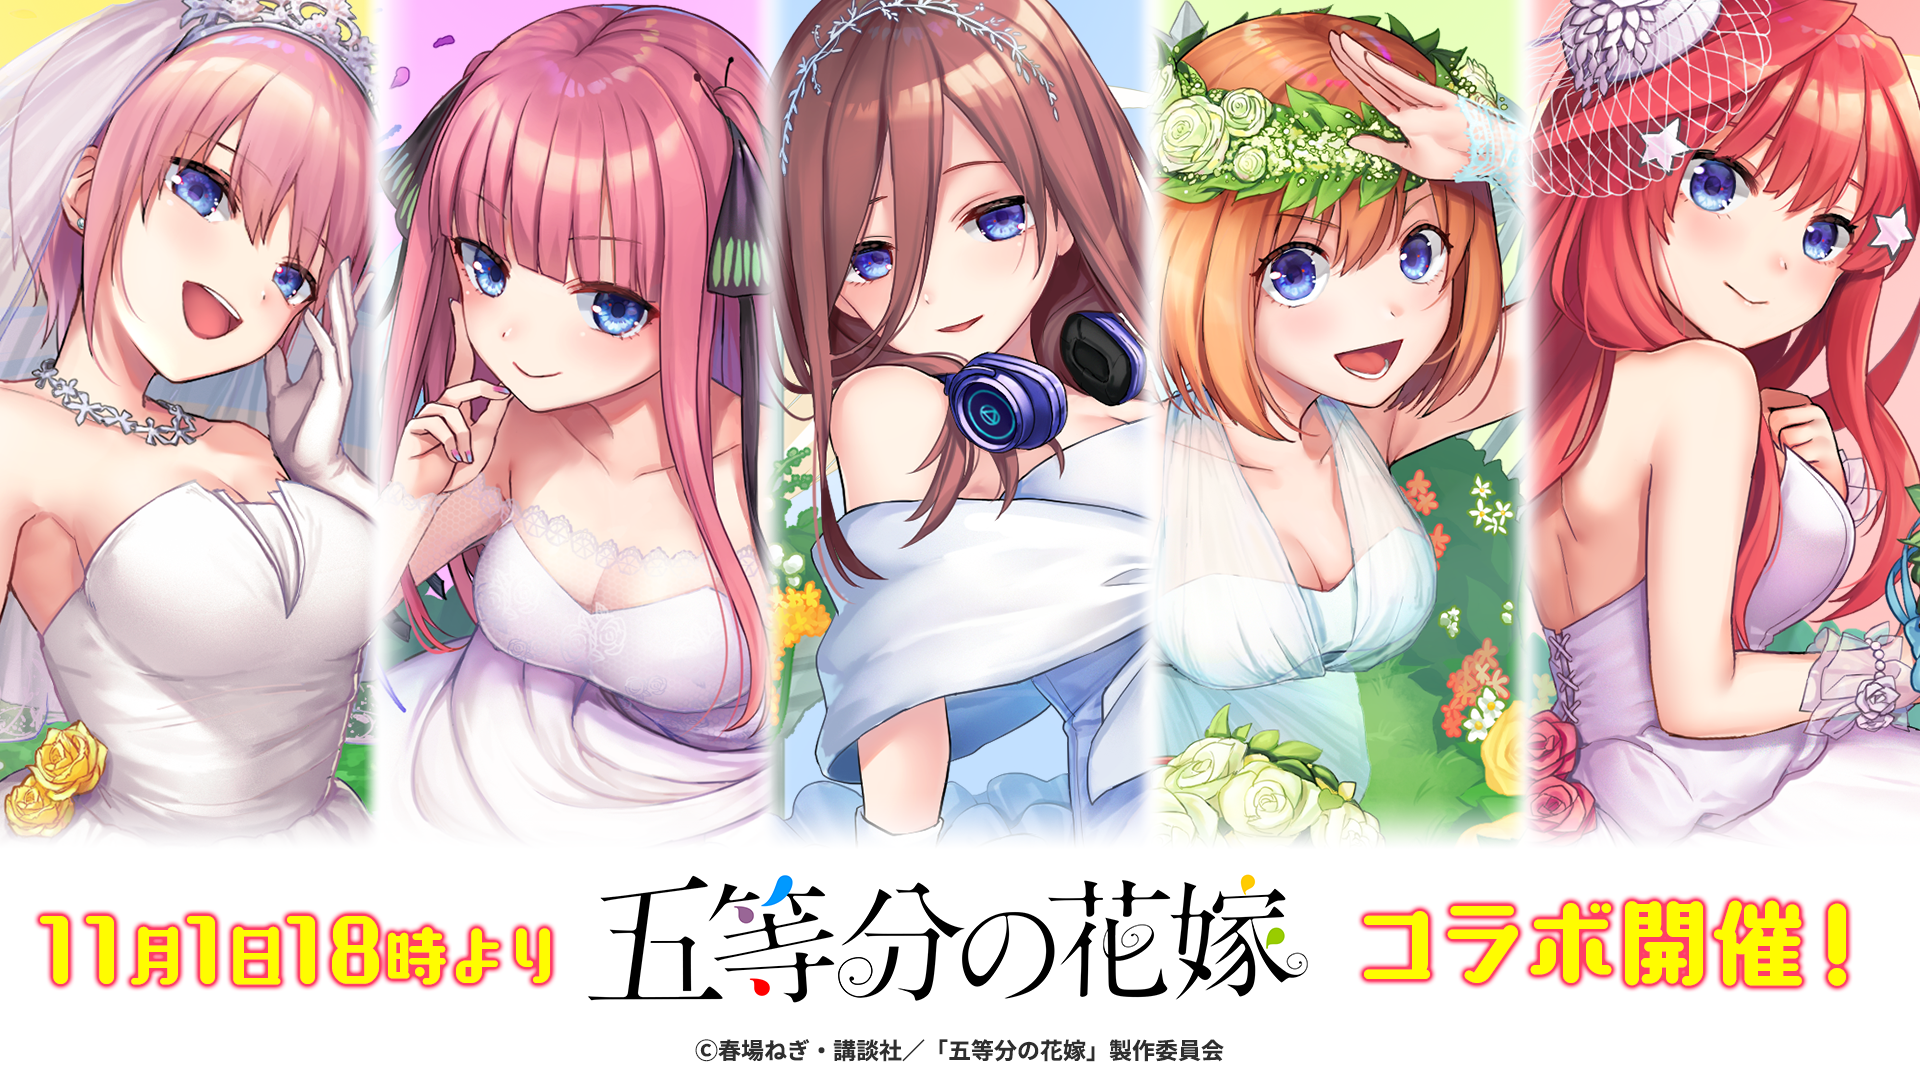 英語とクイズのココロセカイ 2019年11月1日より第二回となるアニメ 五等分の花嫁 とのコラボイベントを開催 Game Appli Info